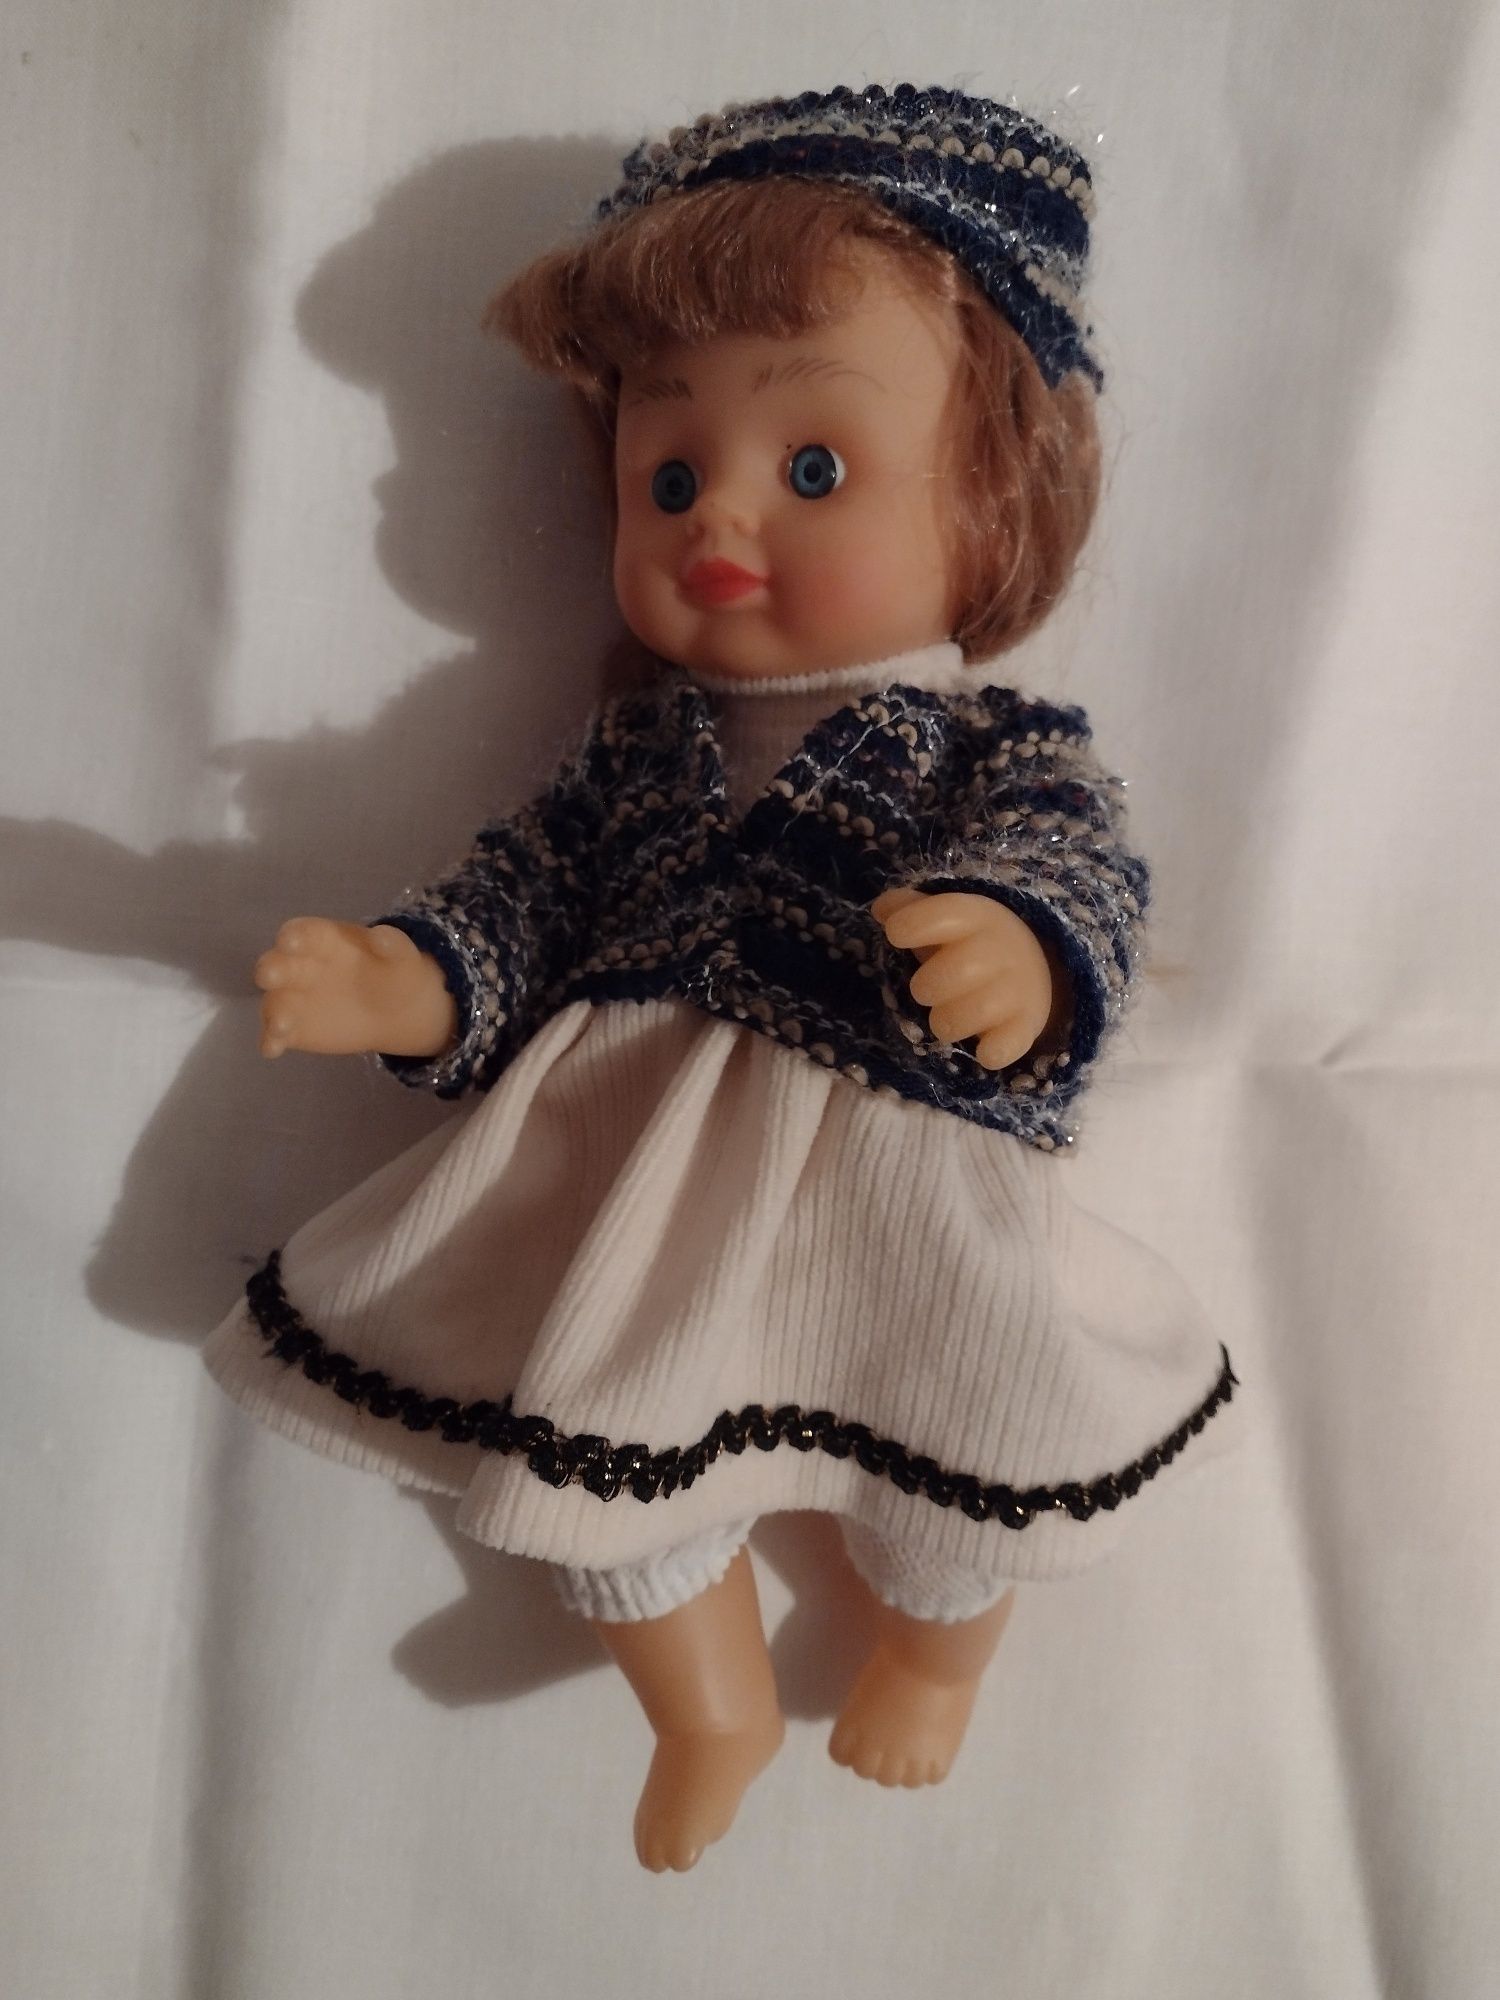 Kolekcjonerska lalka radziecka. #vintage lata 80-te